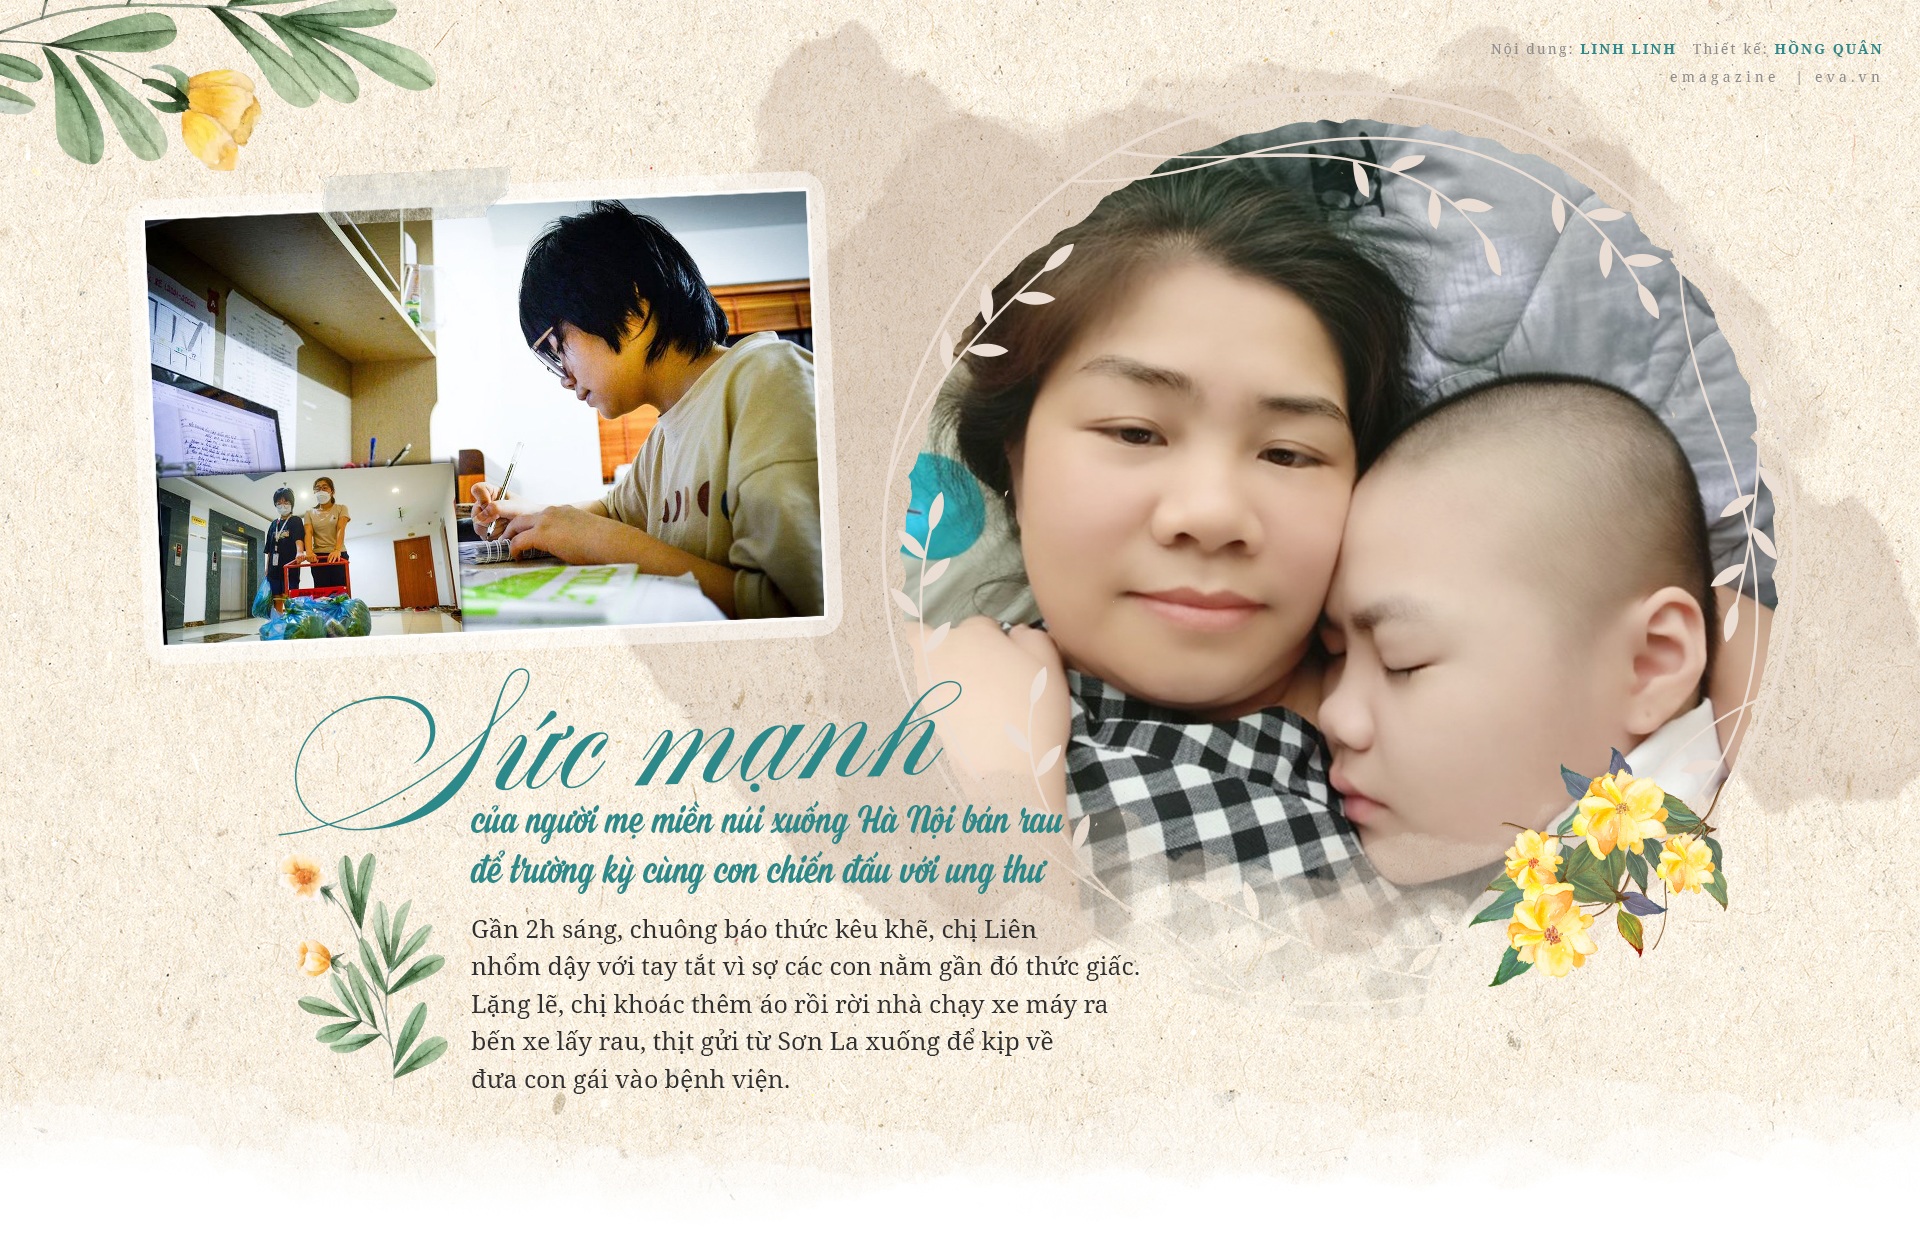 Người mẹ miền núi xuống Hà Nội bán rau để trường kỳ cùng con chiến đấu với ung thư - 1